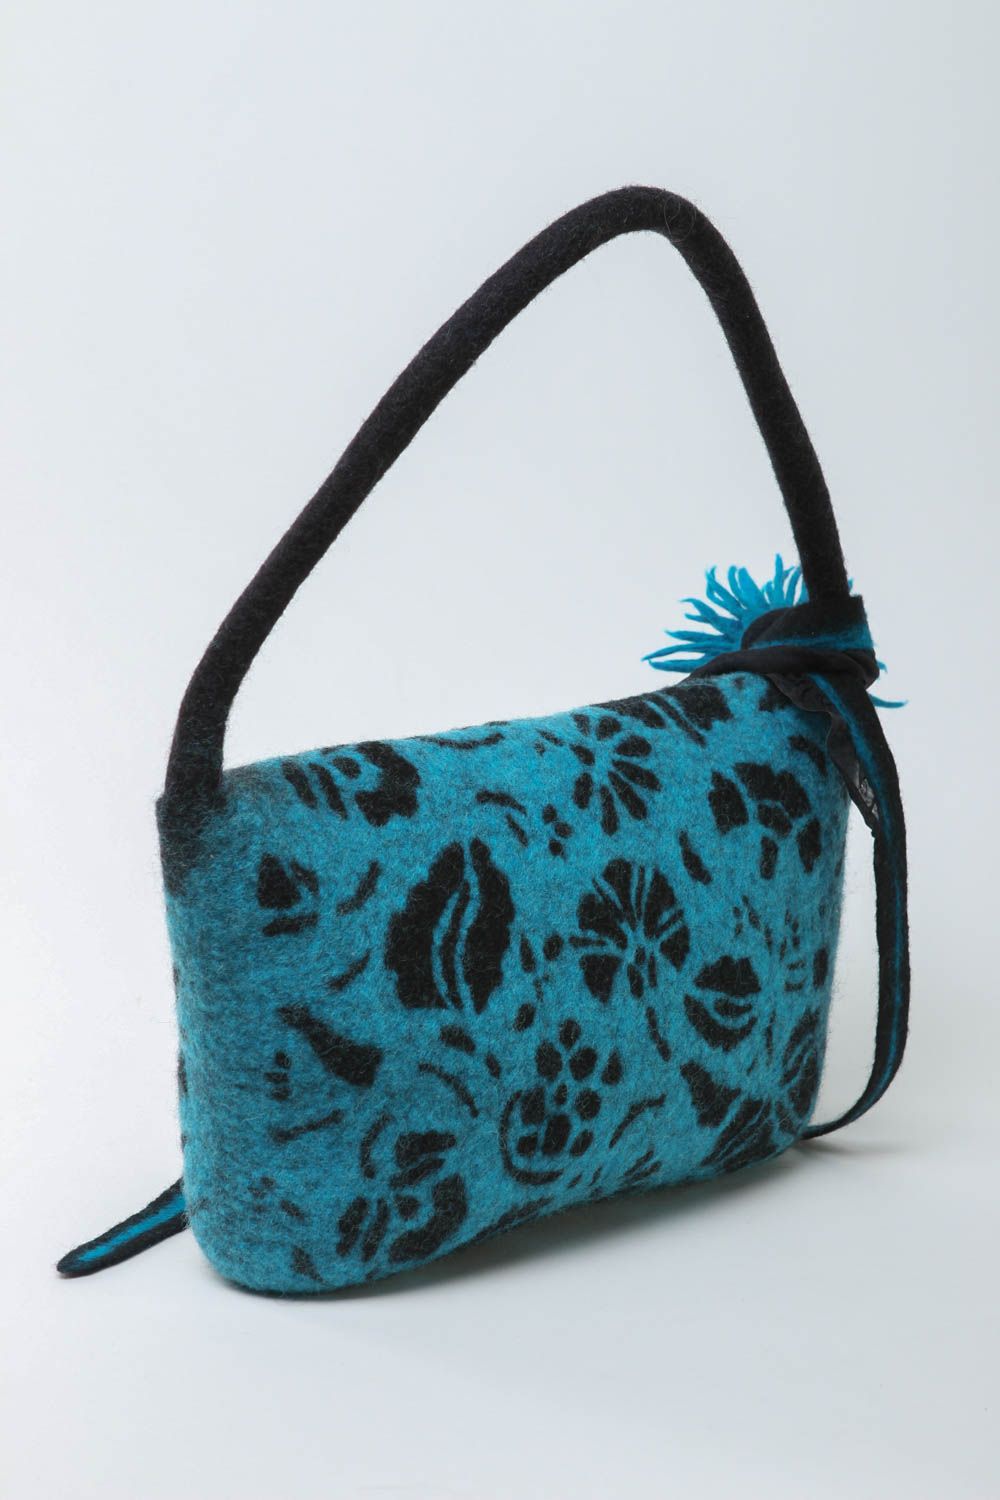 Sac en laine feutrée fait main bleu-noir avec fleur Accessoire pour femme photo 4